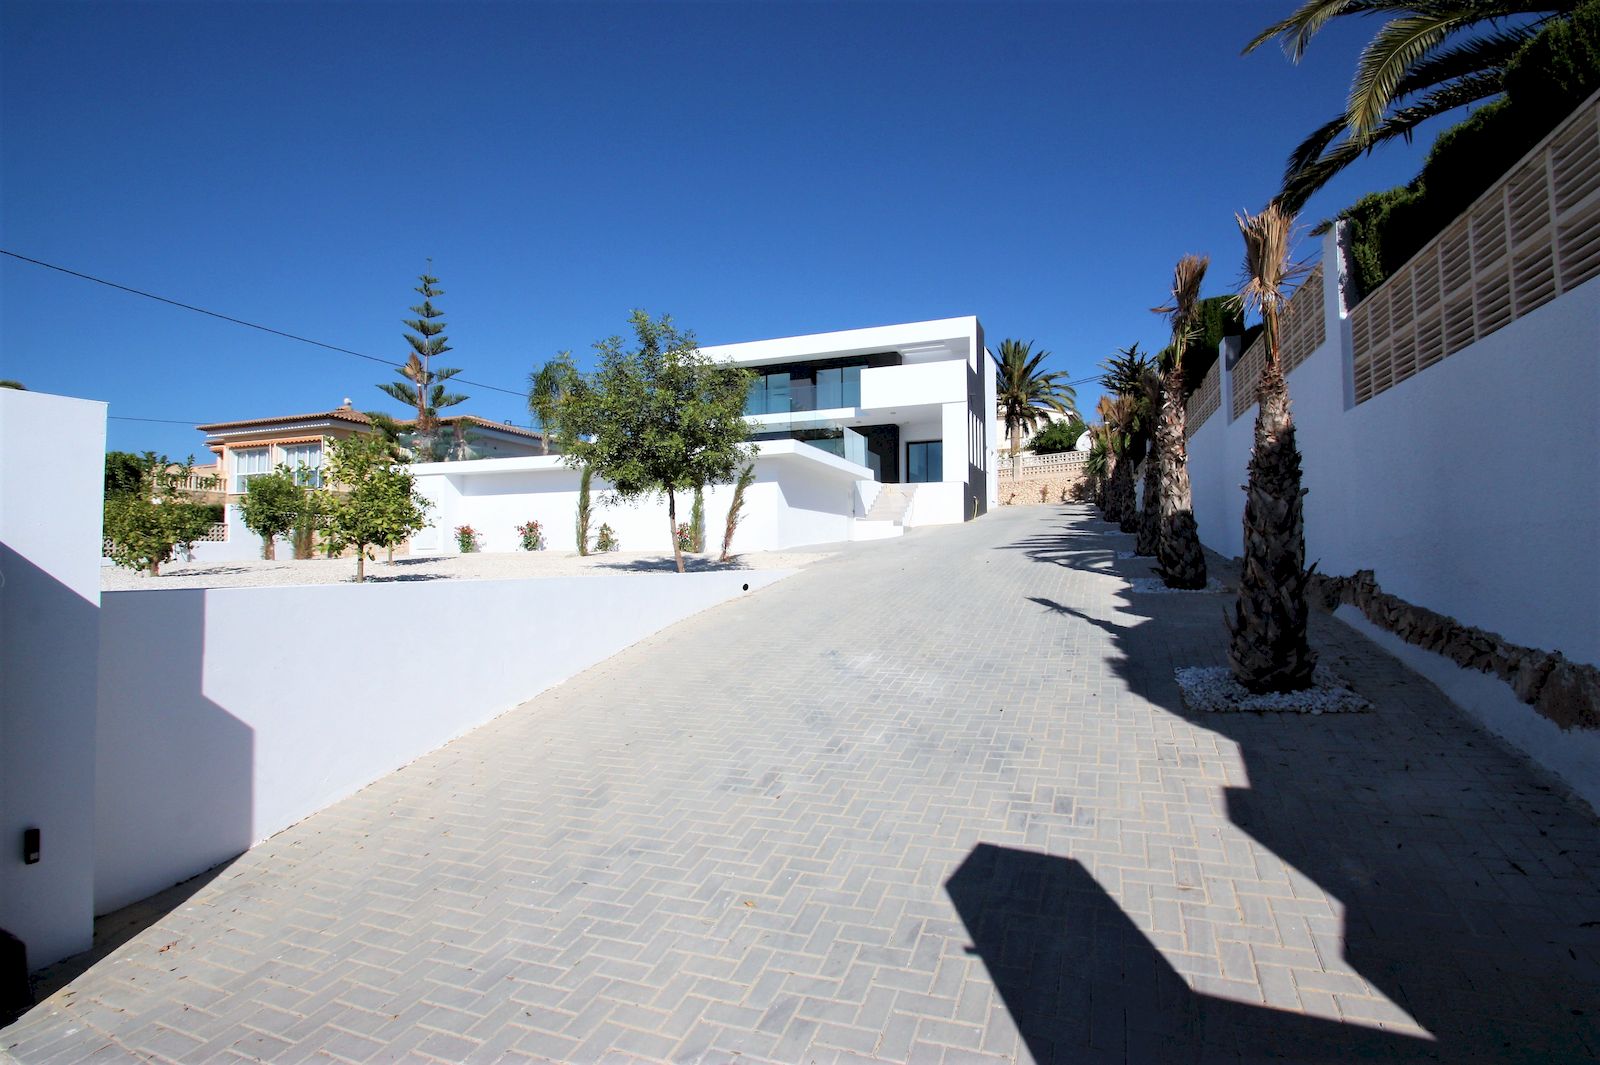 Villa gebouwd door GH Costa Blanca - Calpe